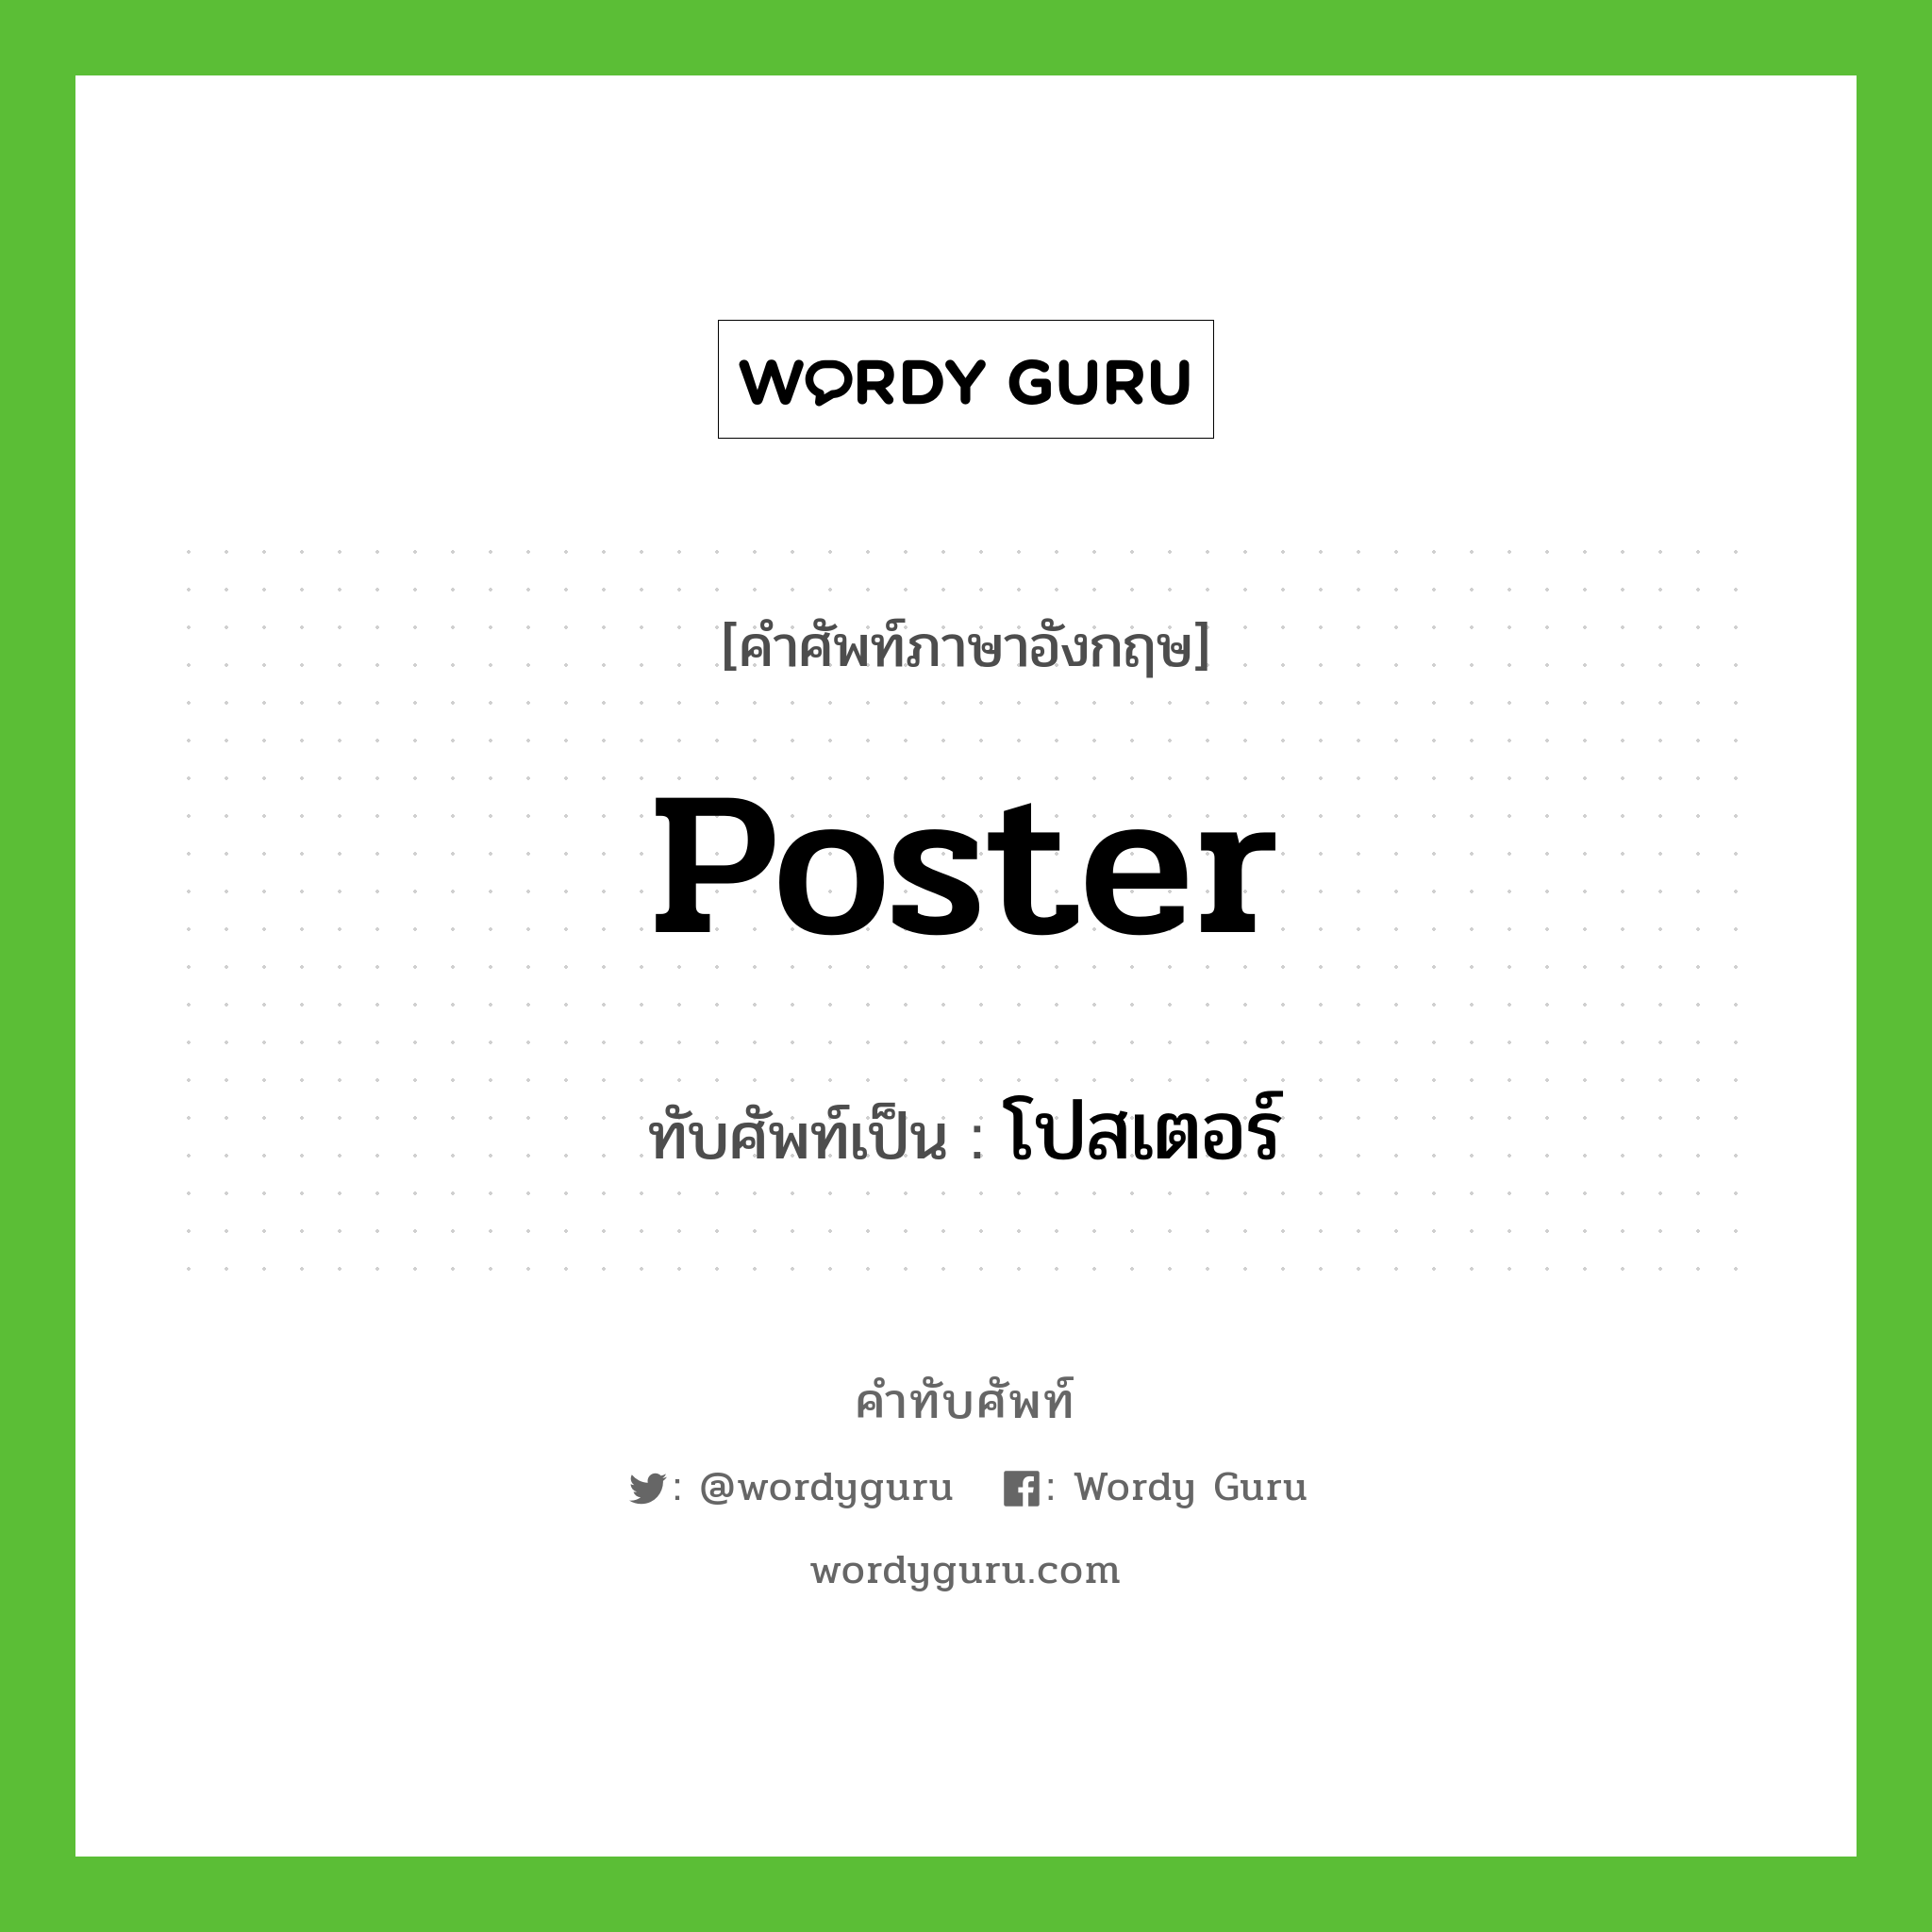 poster เขียนเป็นคำไทยว่าอะไร?, คำศัพท์ภาษาอังกฤษ poster ทับศัพท์เป็น โปสเตอร์